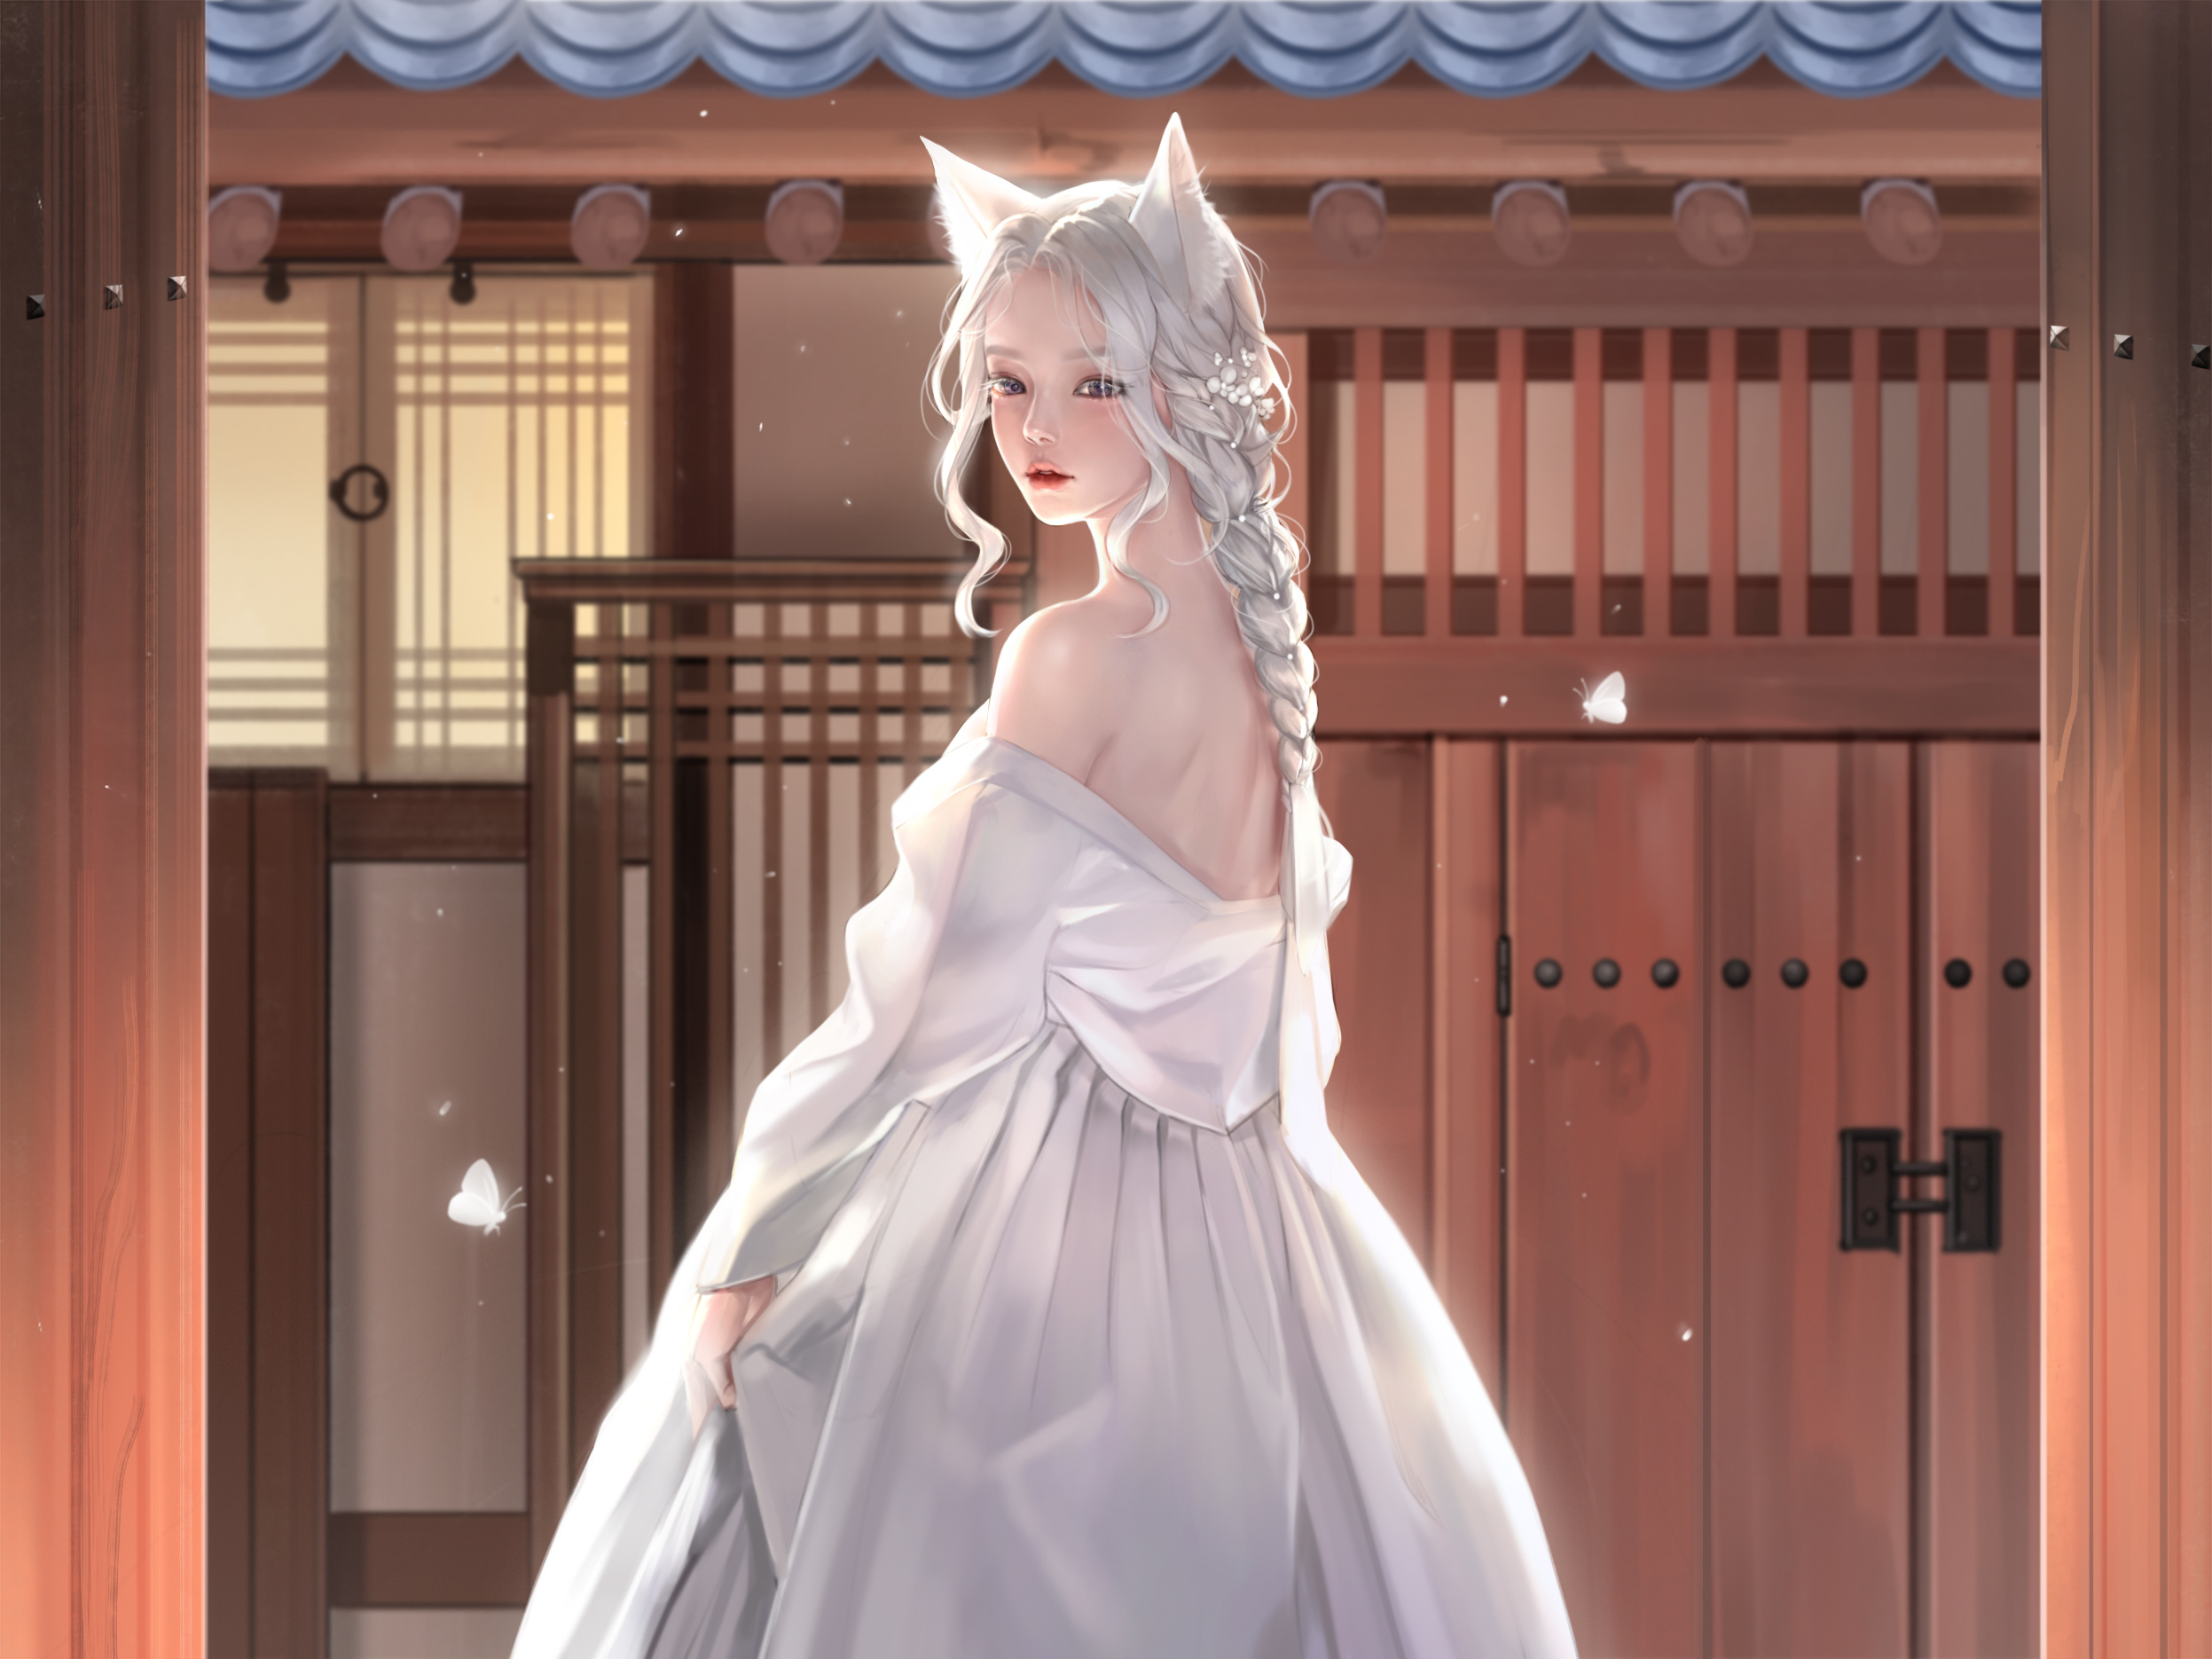 Kangagi97 Women Fox Girl Fantasy Girl White Hair Fox Ears Dress White Dress Artwork Fan Art Digital  2494x1870